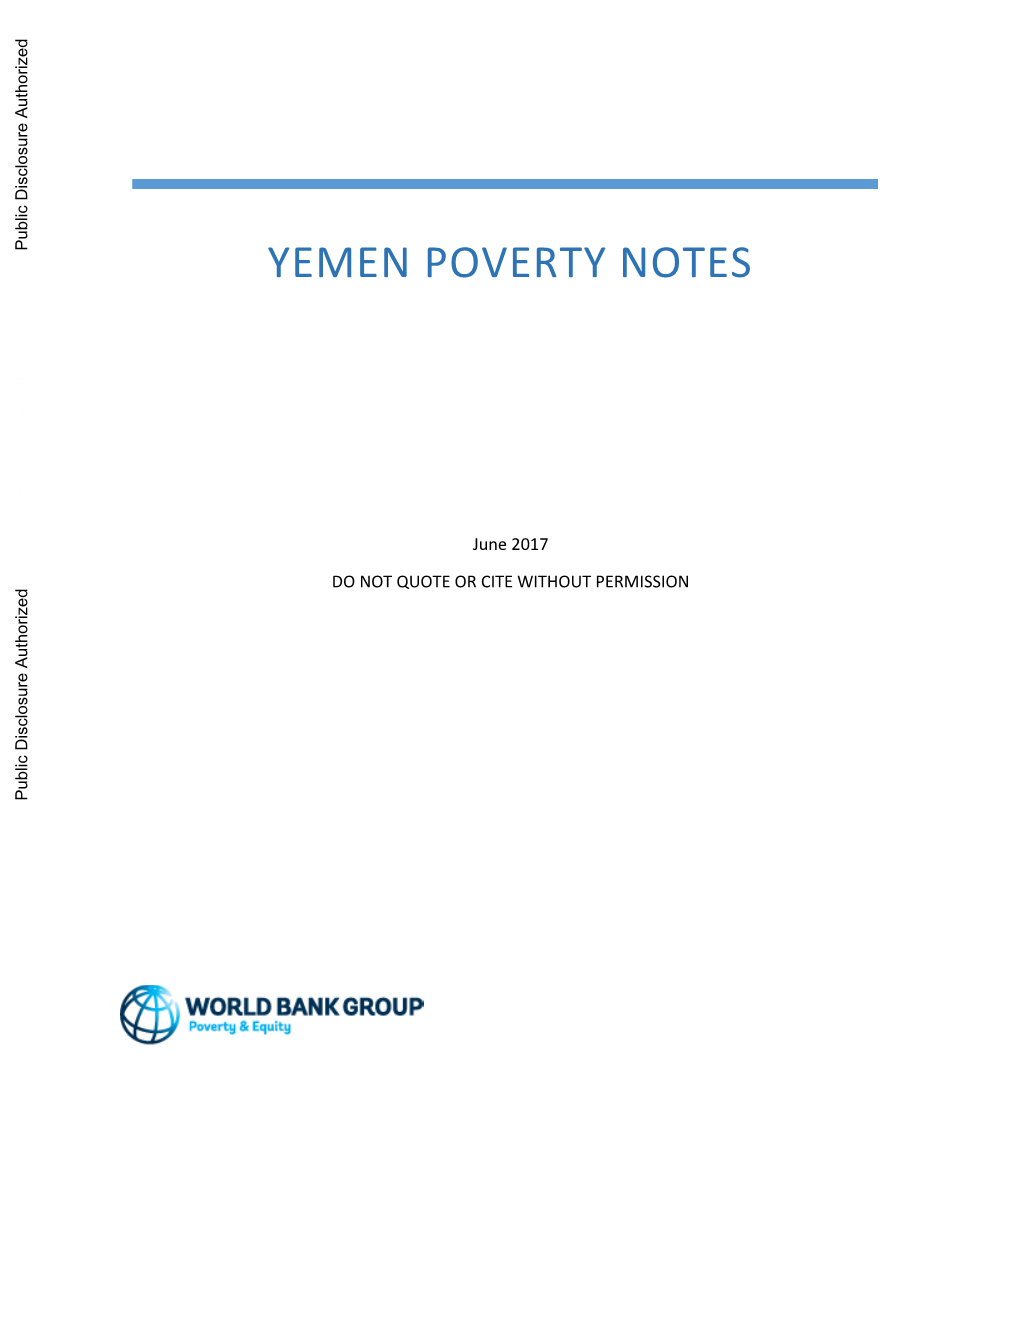 Yemen Poverty Notes